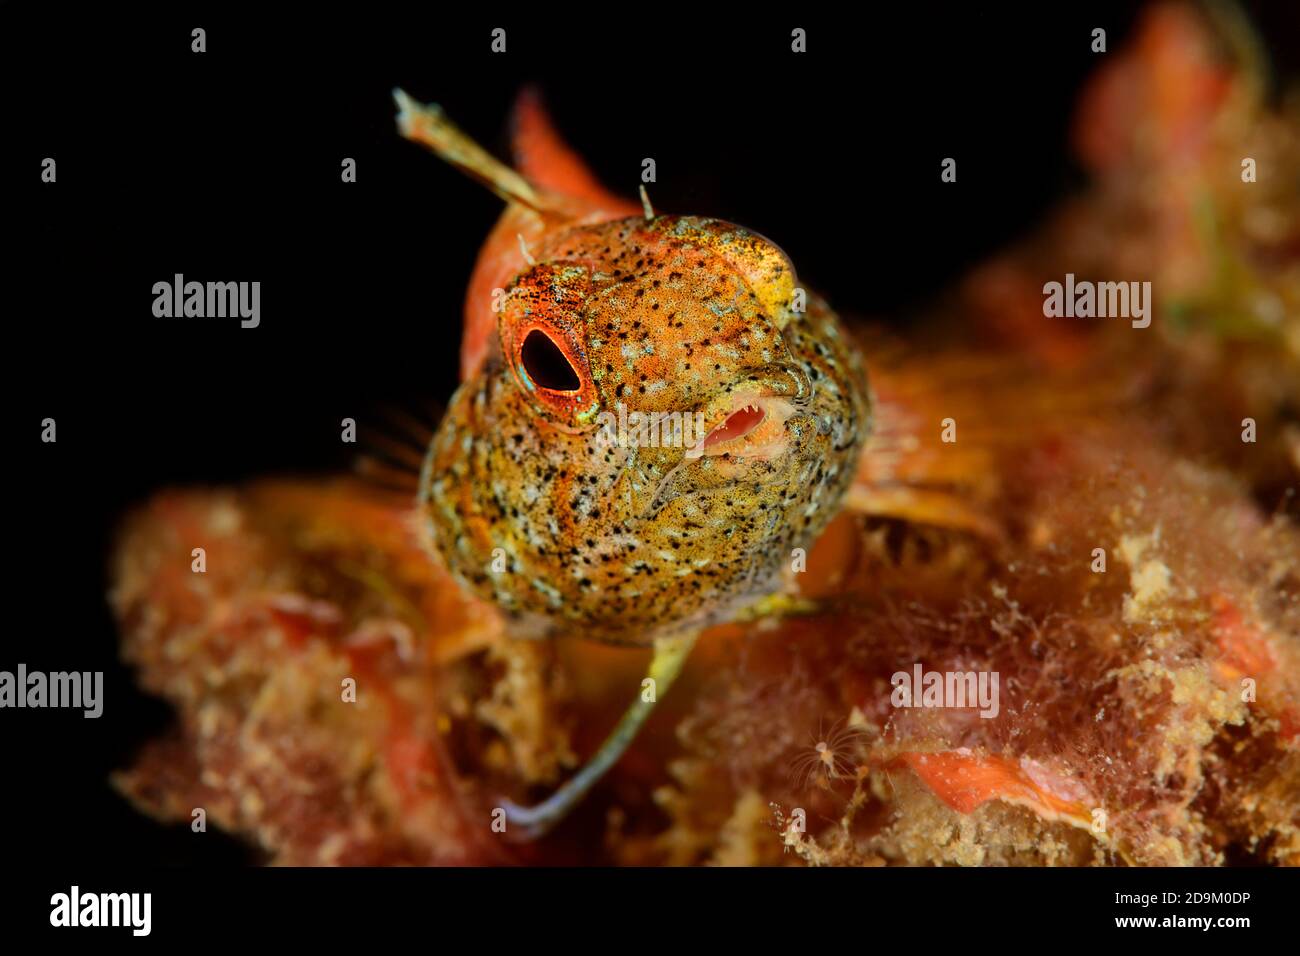 Spitzkopfschleimig Fisch, Tripterygion delaisi, Tamariu, Costa Brava, Spanien, Mittelmeer Stockfoto